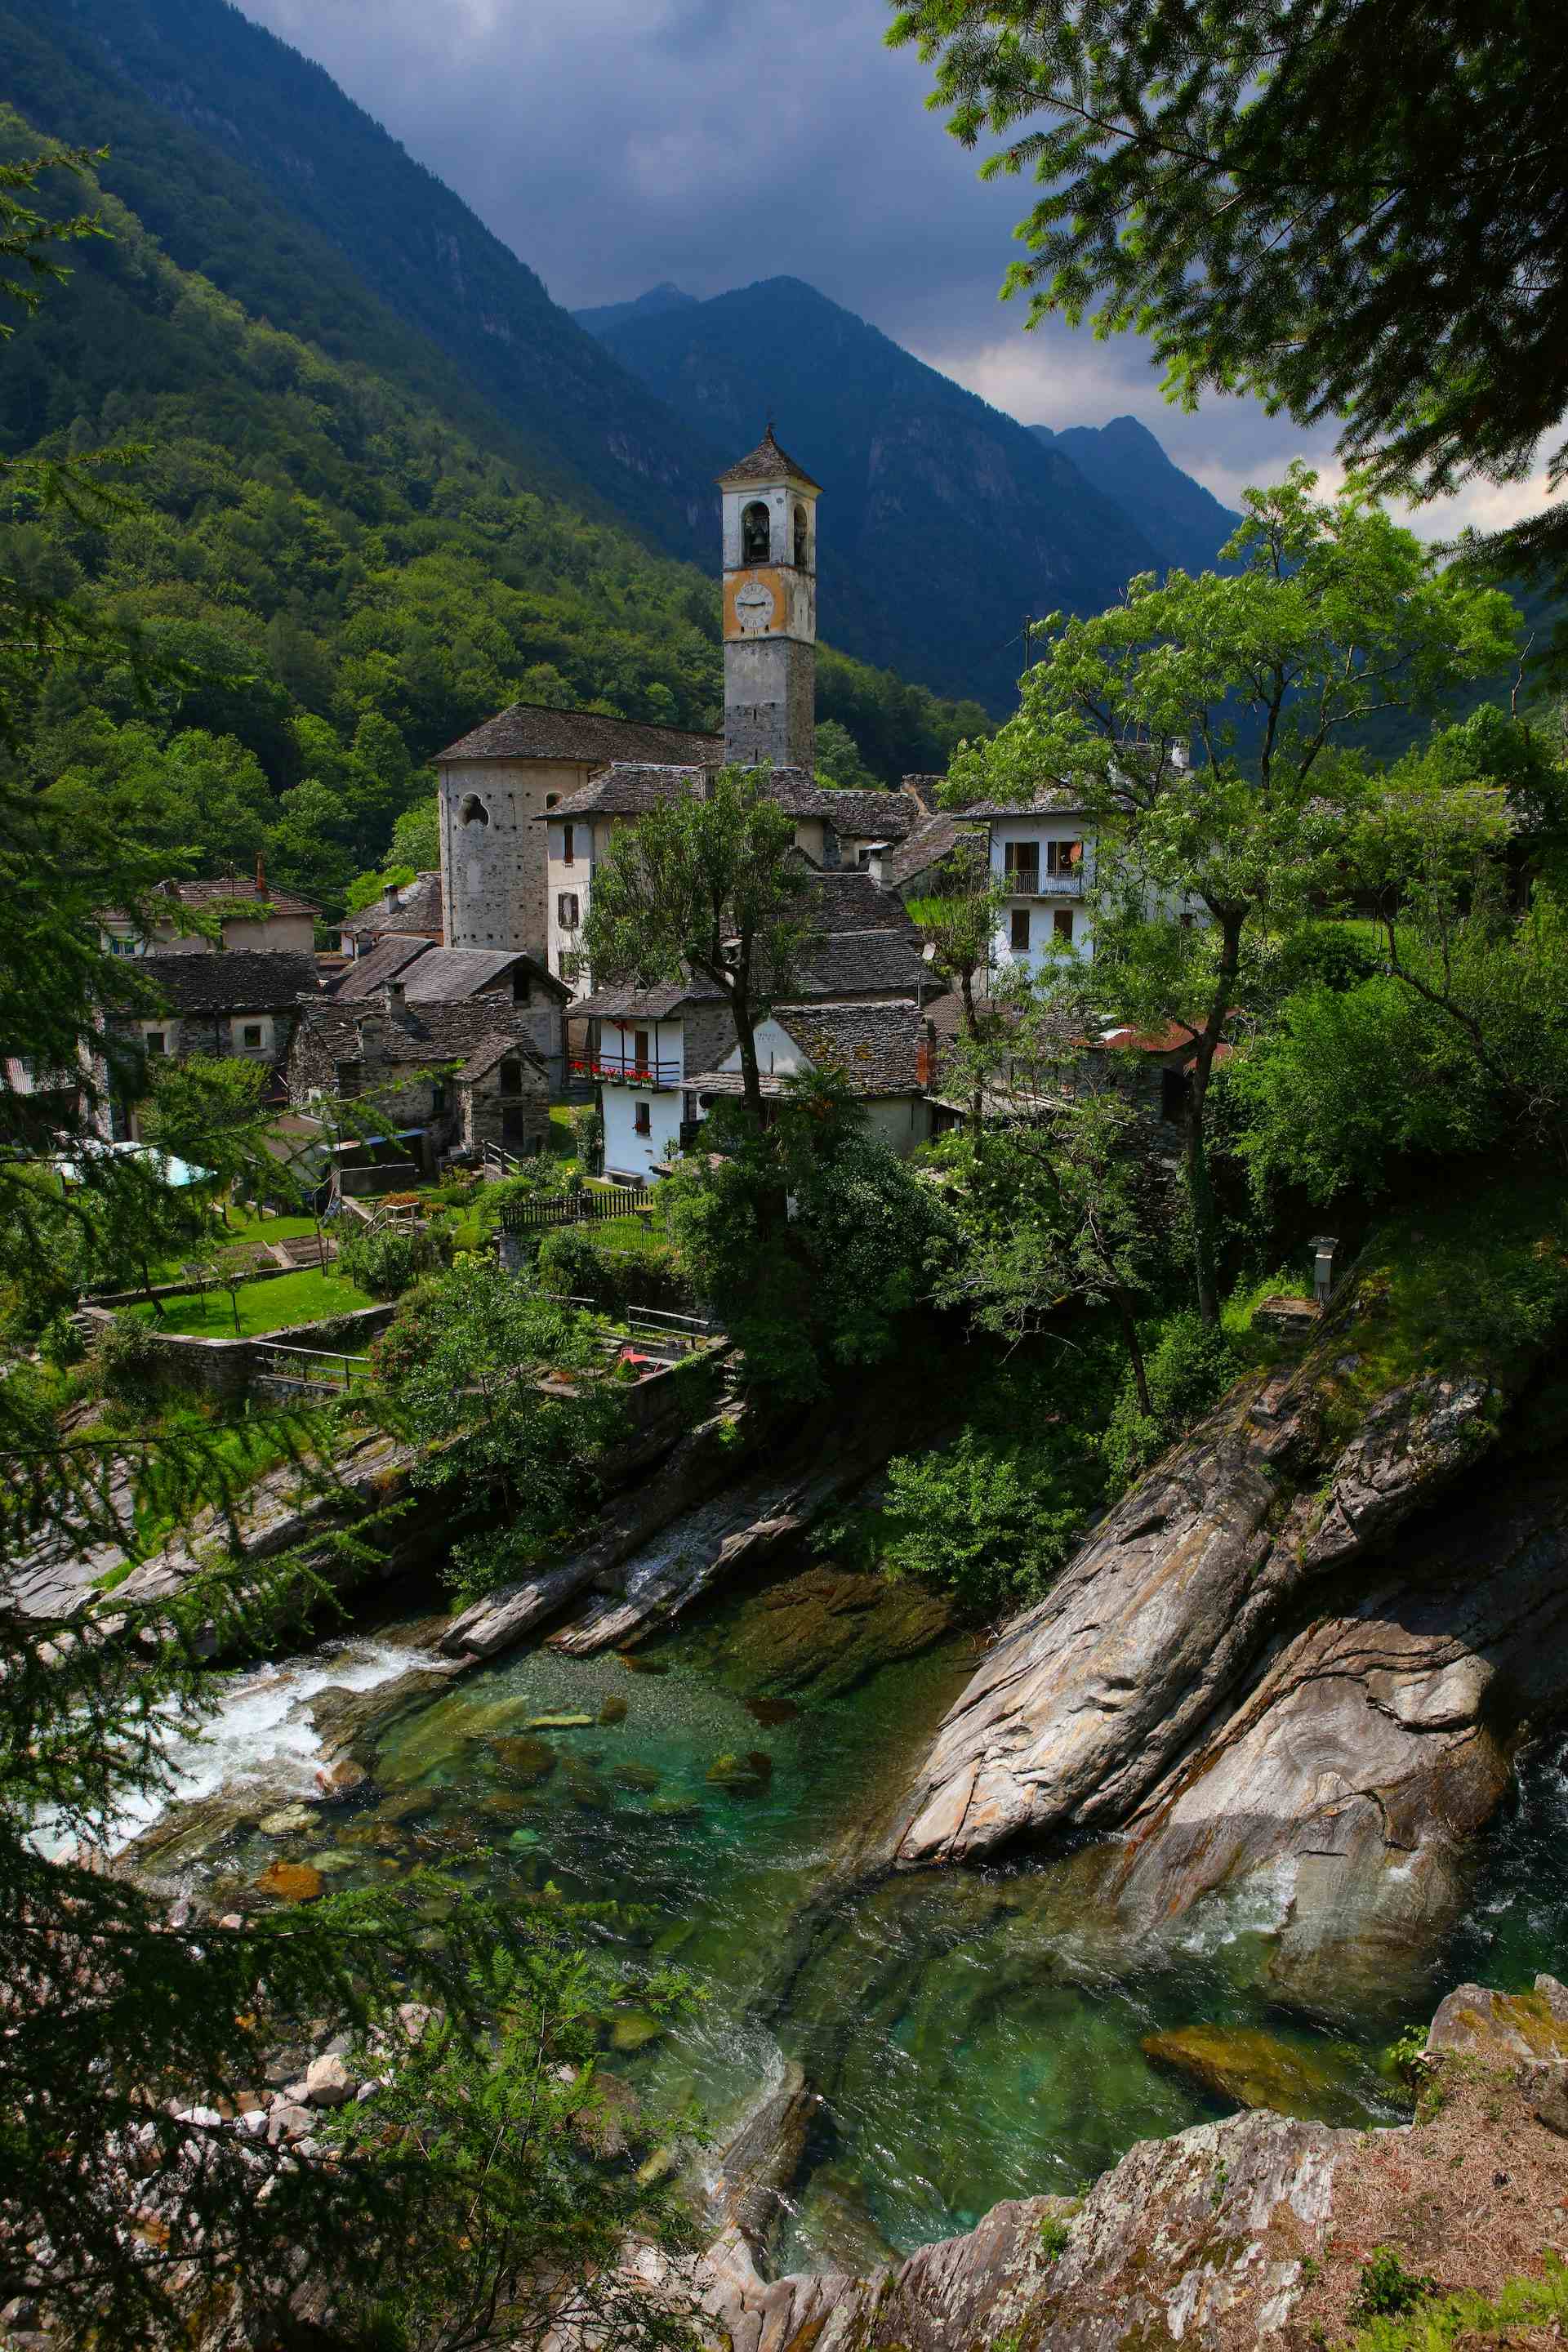 Alpe Russin, producer in Malvaglia canton of Ticino in Switzerland